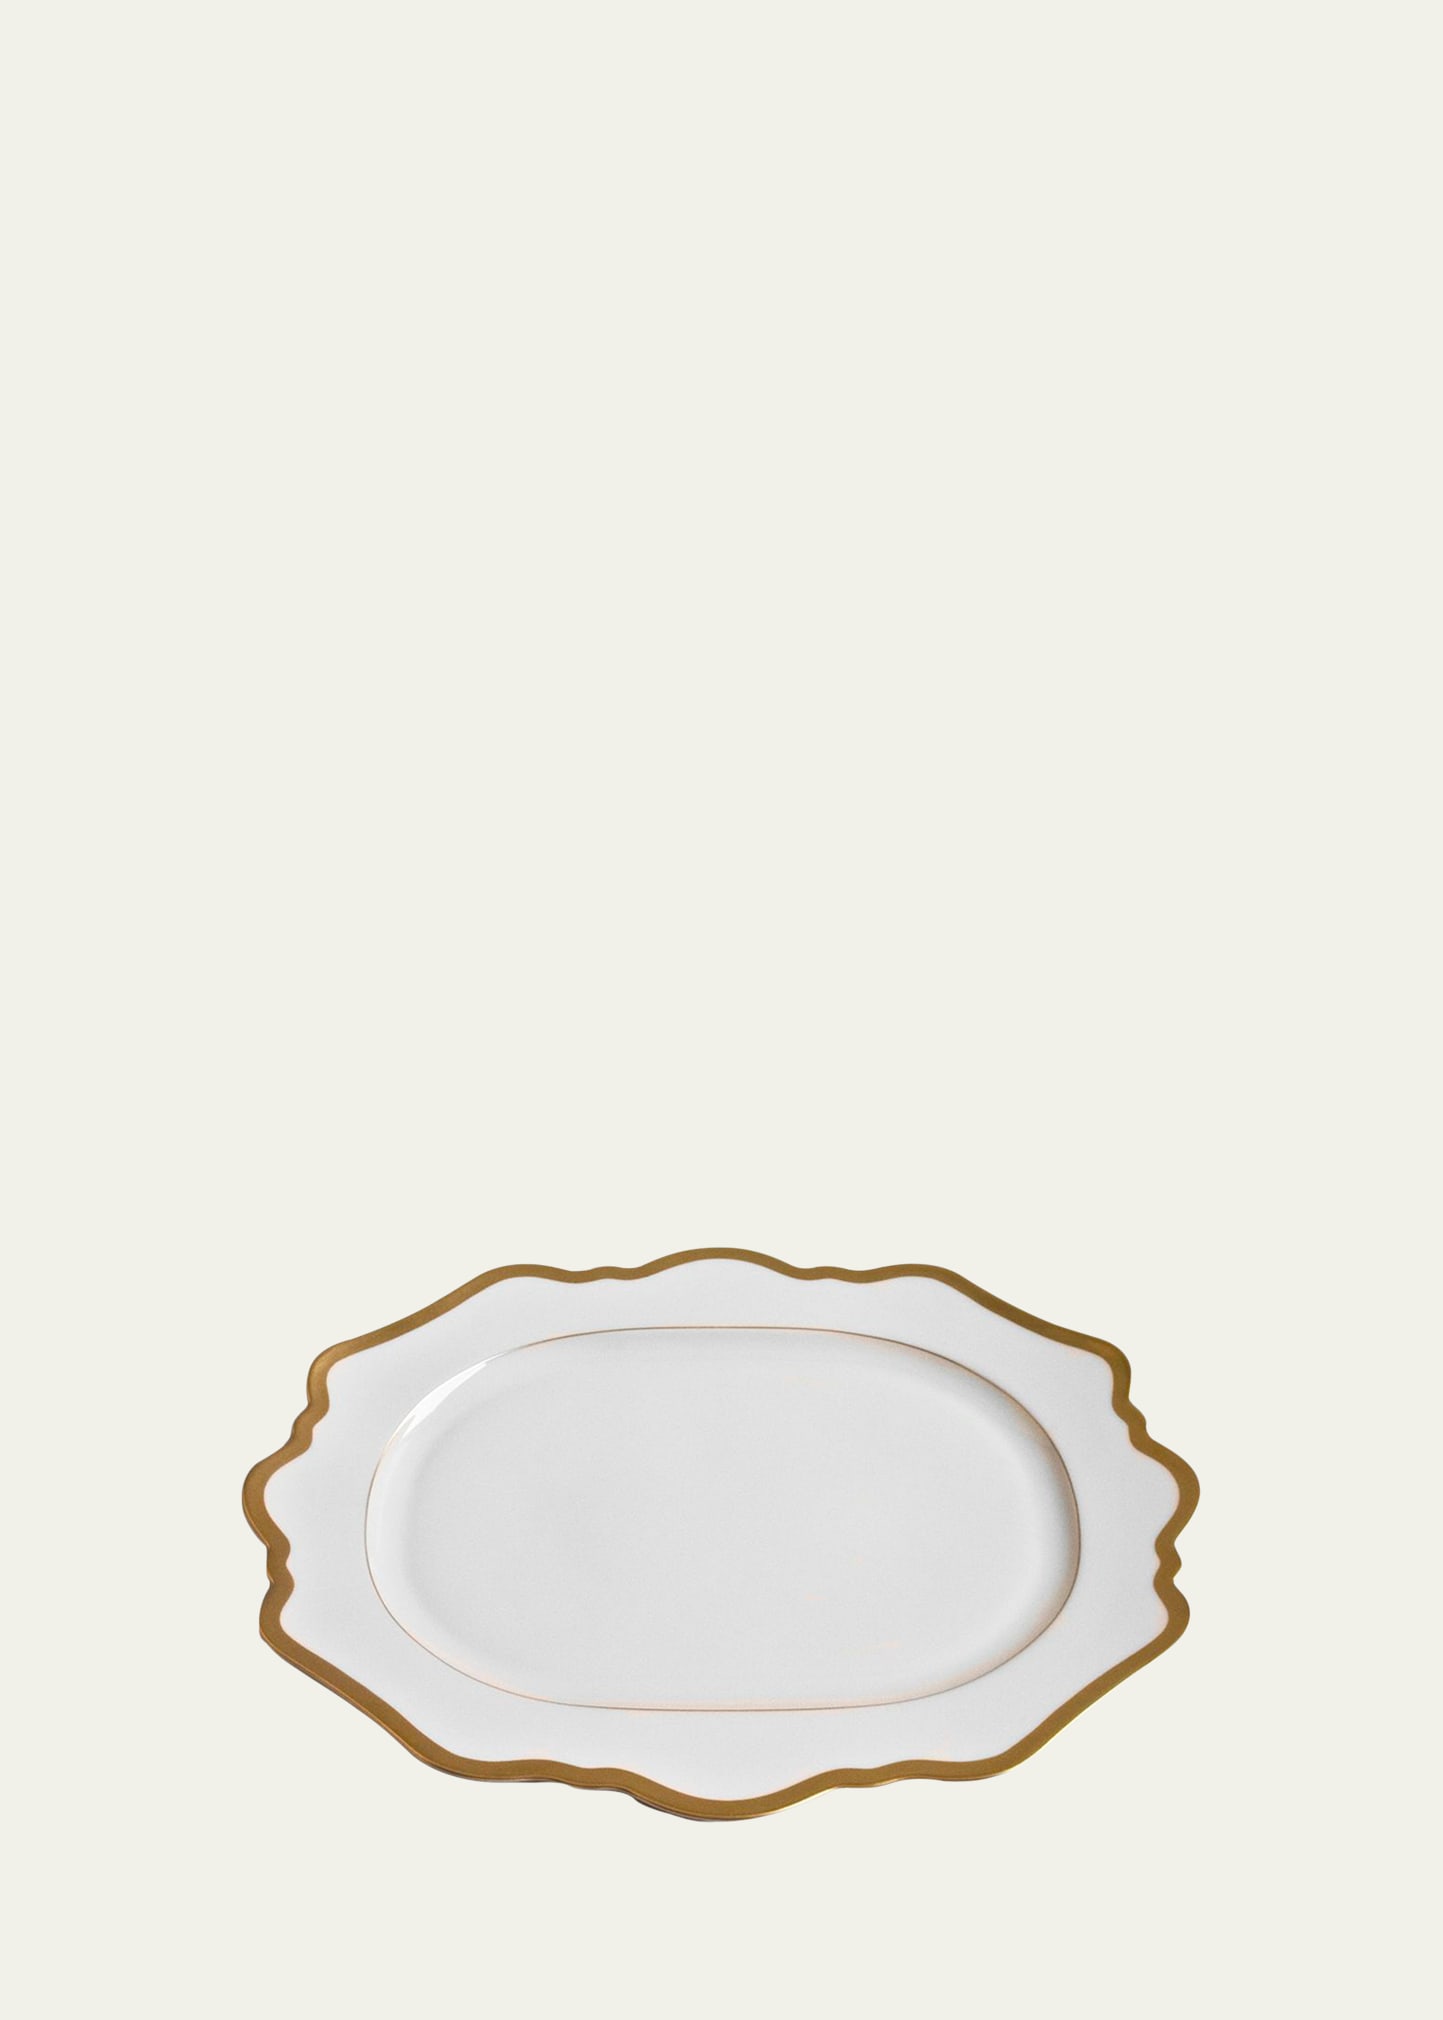 Antiqued White Oval Platter